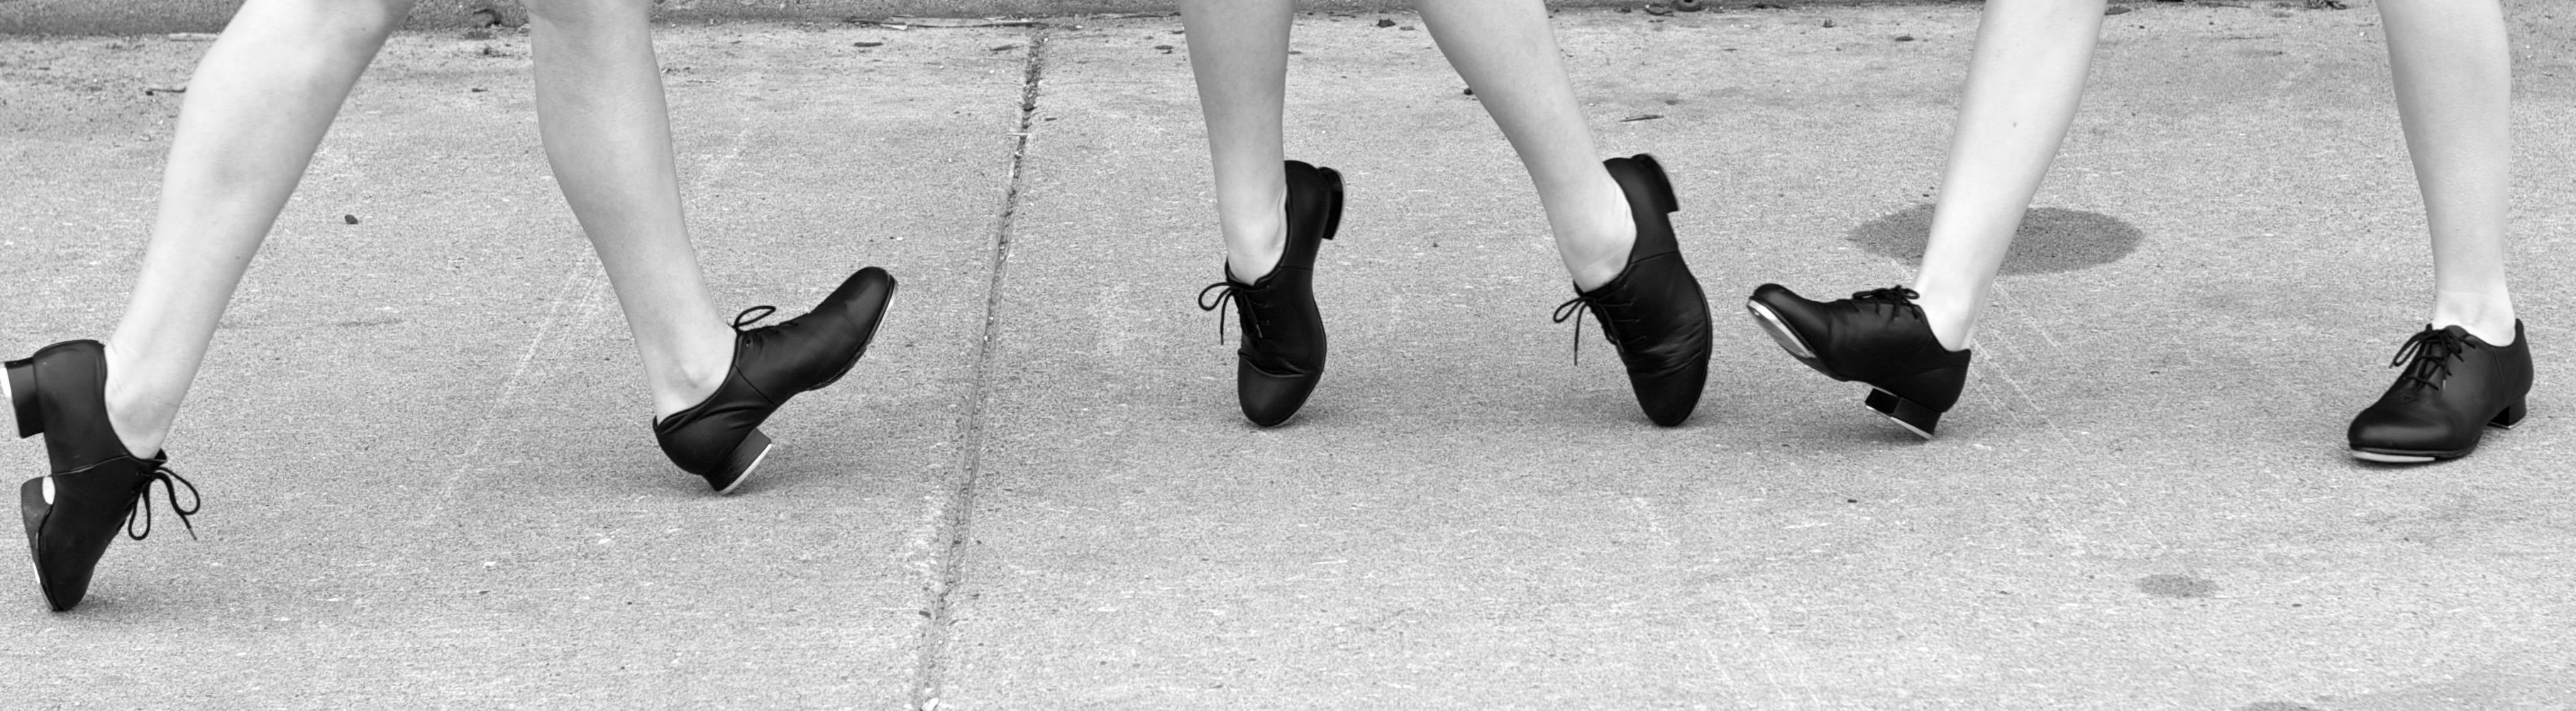 tap dance shoes dance